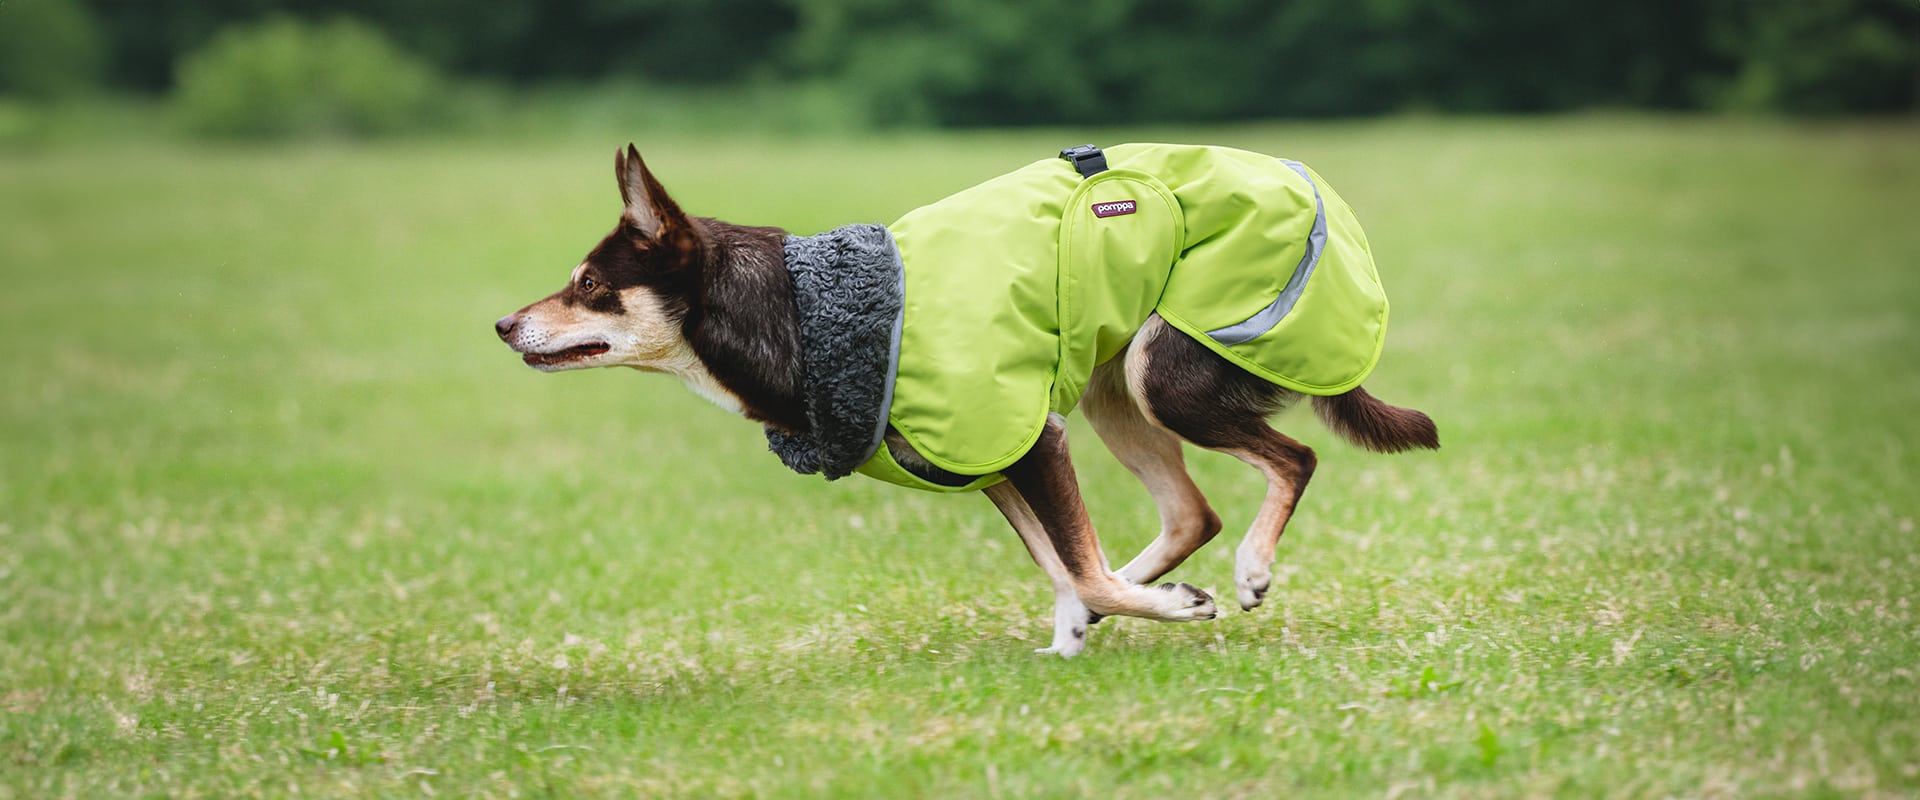 dog sport vest, dog sport vest Suppliers and Manufacturers at